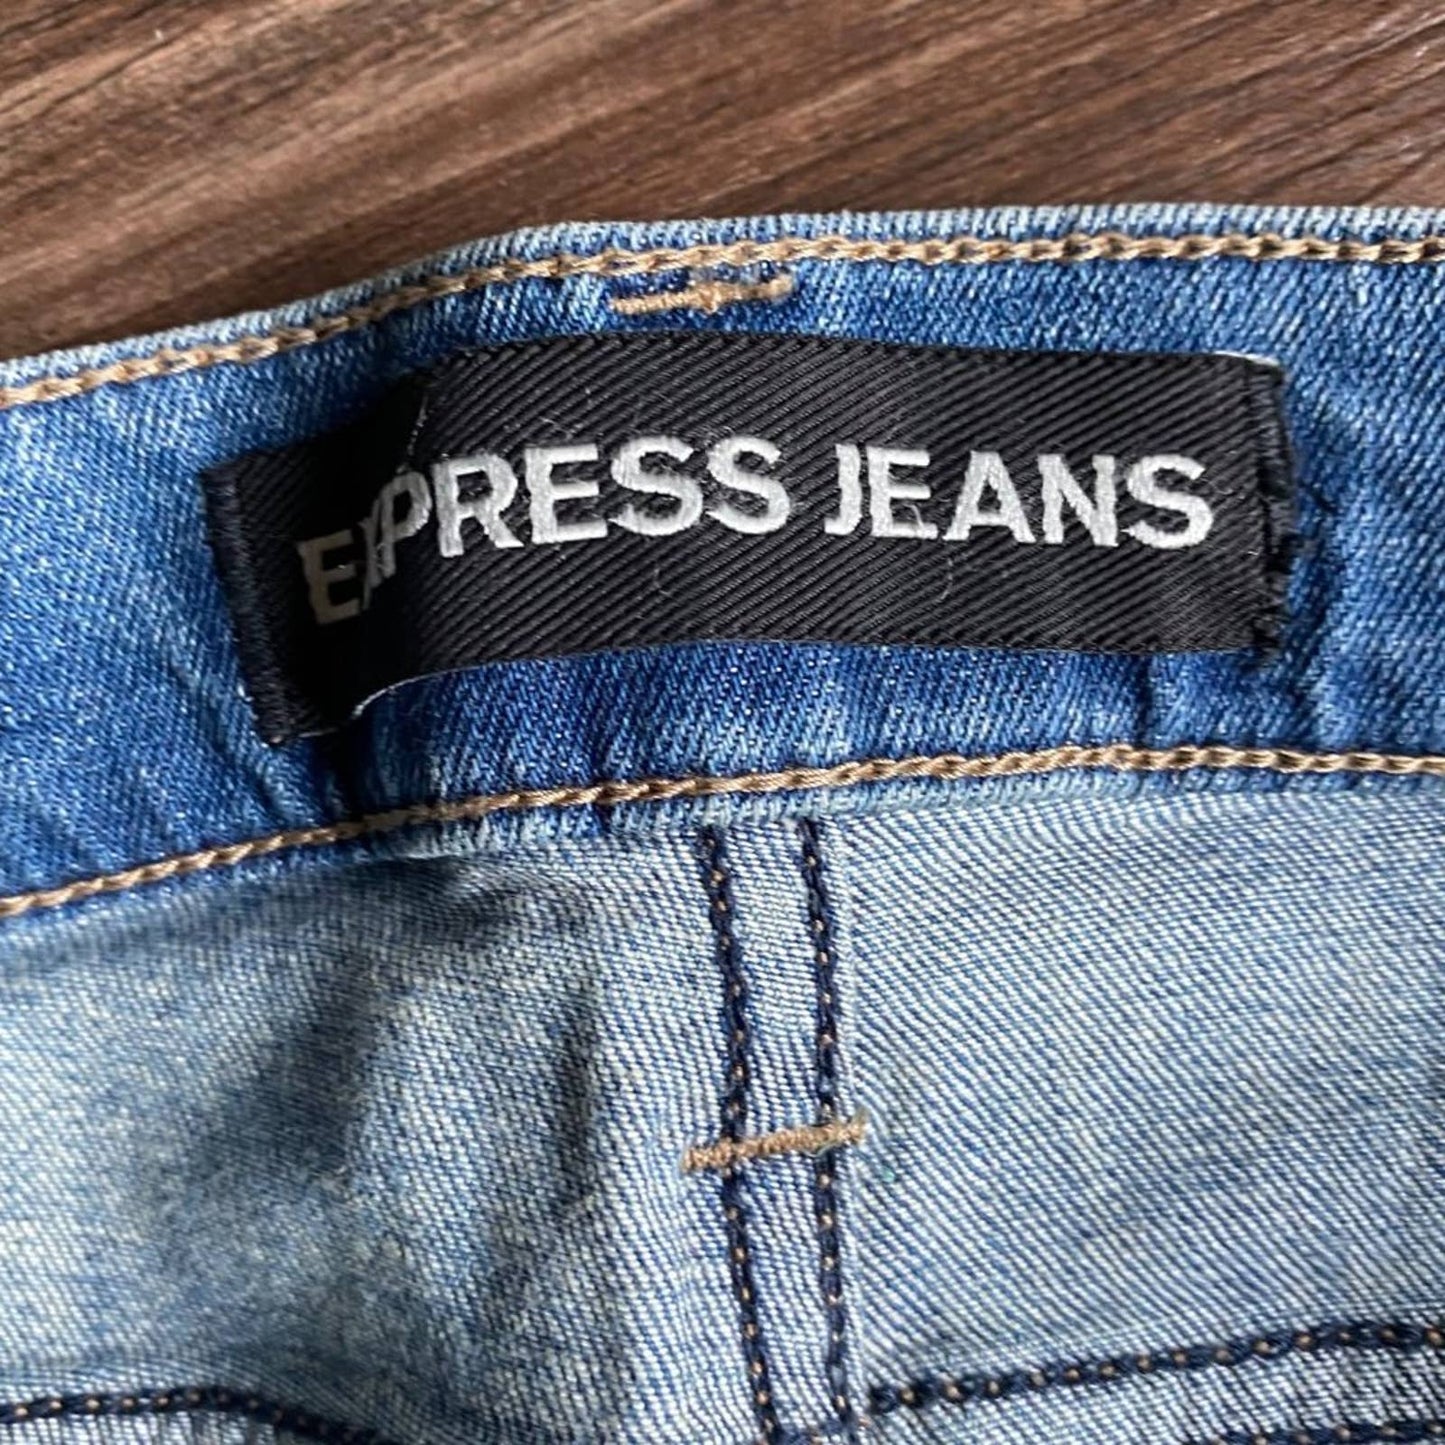 Express Jean sz 4 Cut off short faded jean NWT